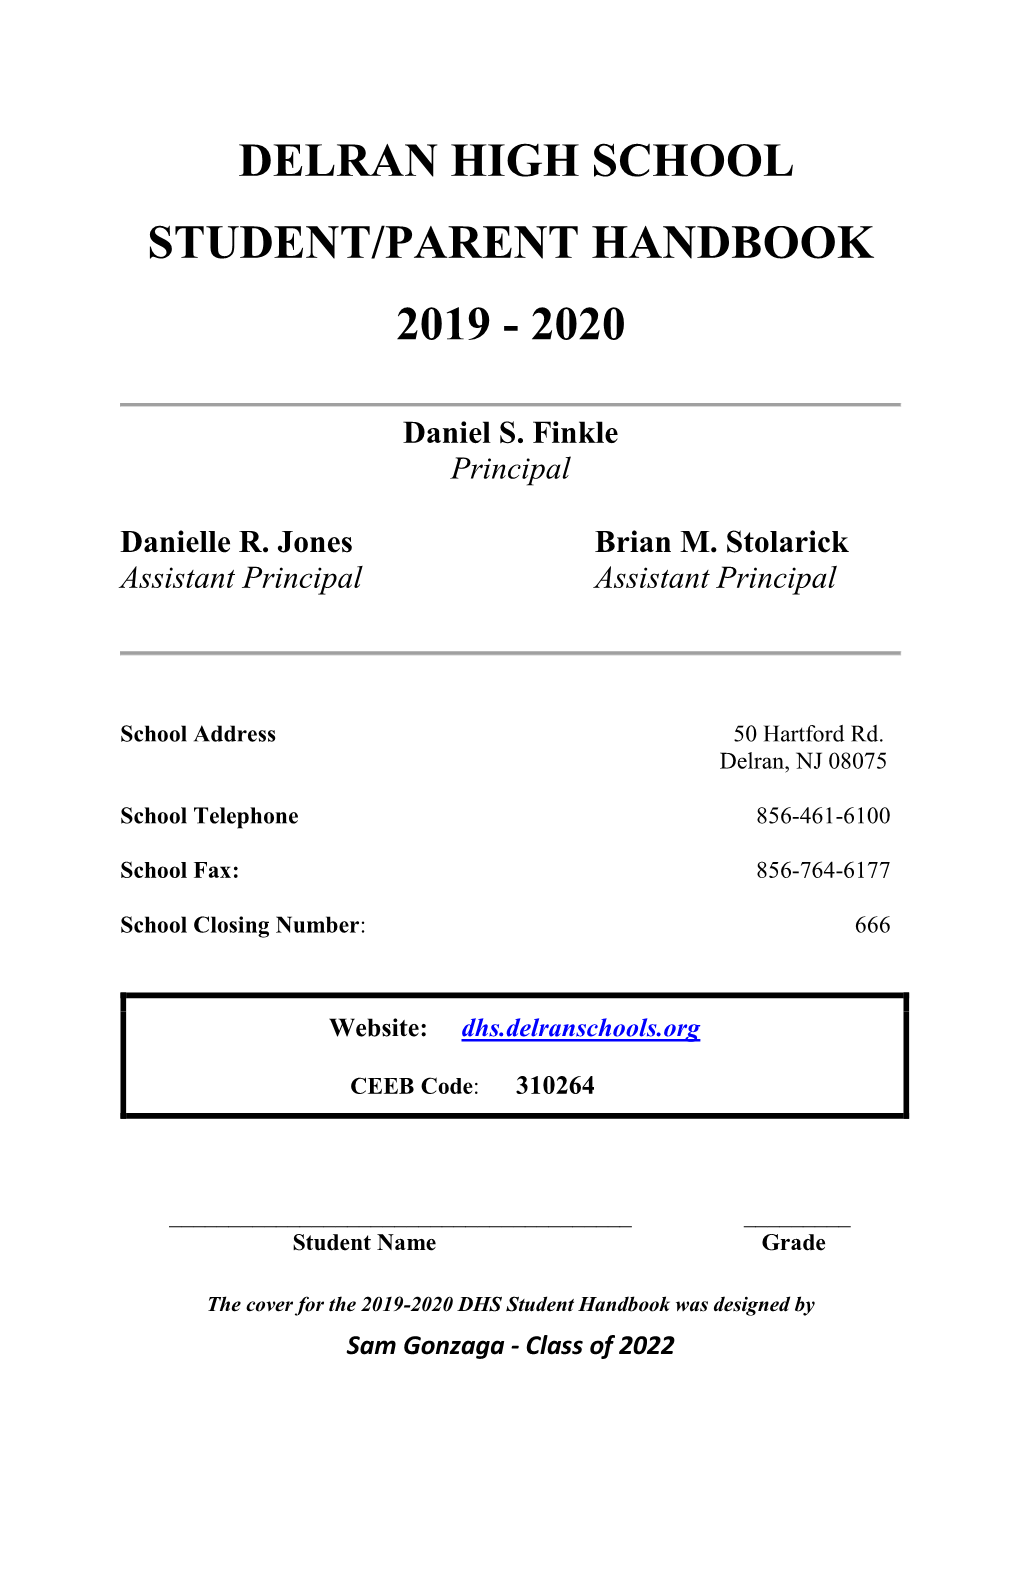 Delran High School Student/Parent Handbook 2019 - 2020